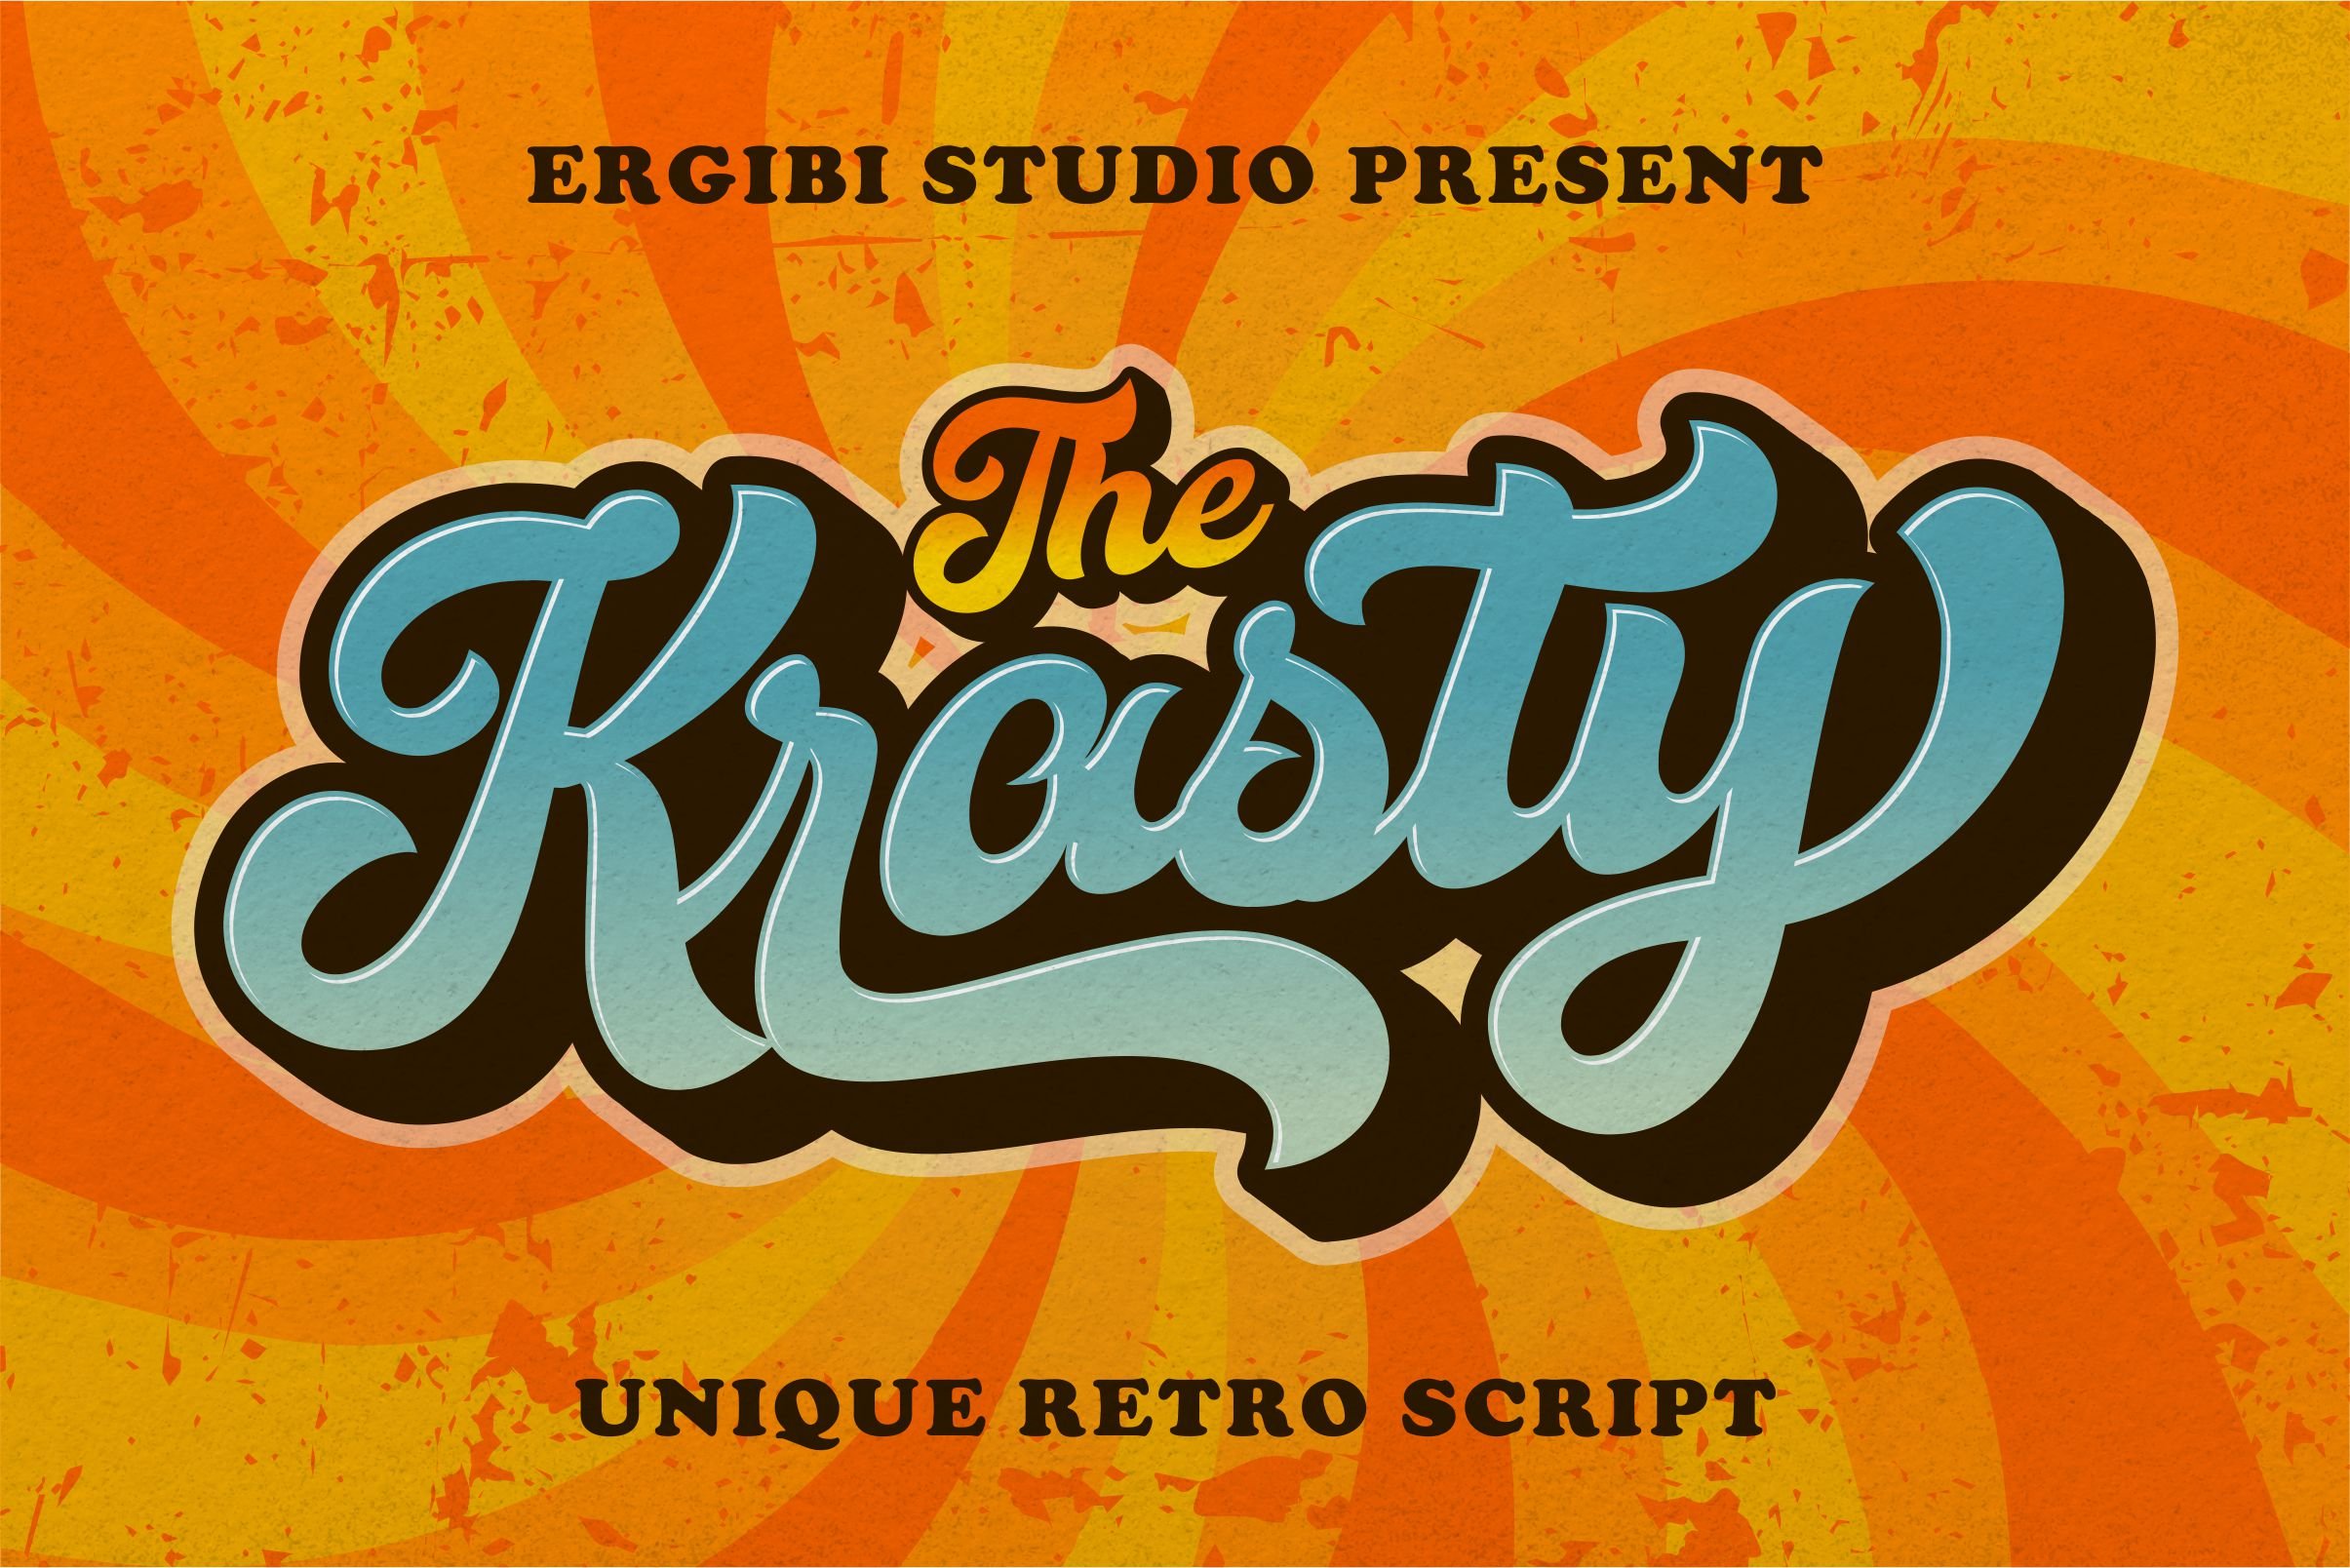 Krasty ~ Unique Retro cover image.